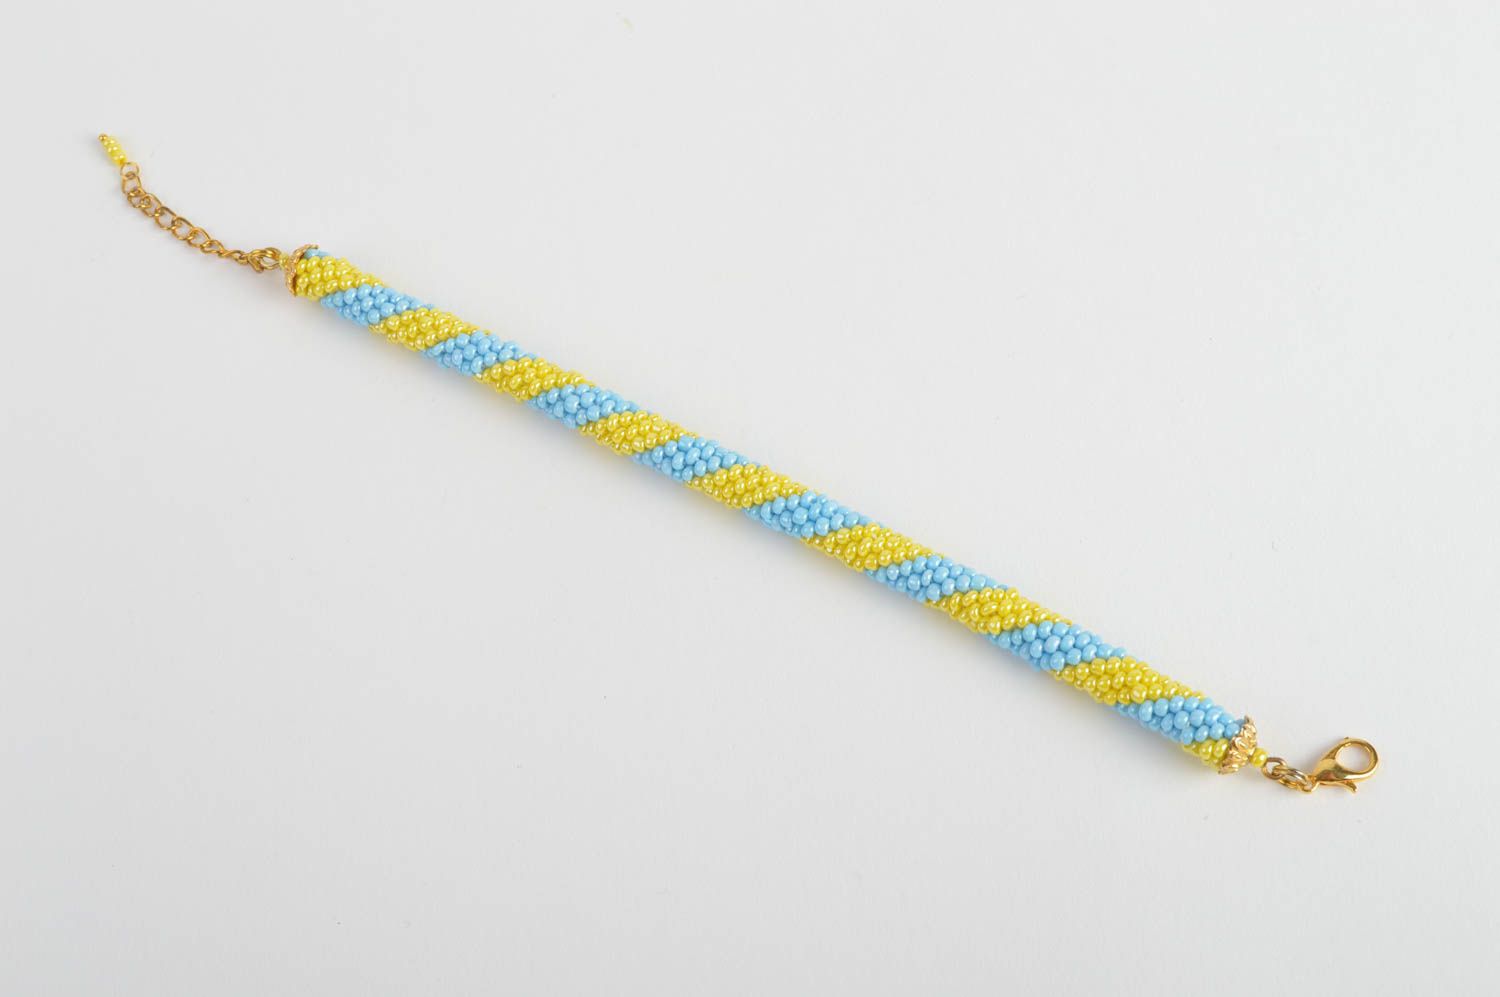 Браслет из чешского бисера в виде жгута желтый с голубым хенд мейд на цепочке фото 5